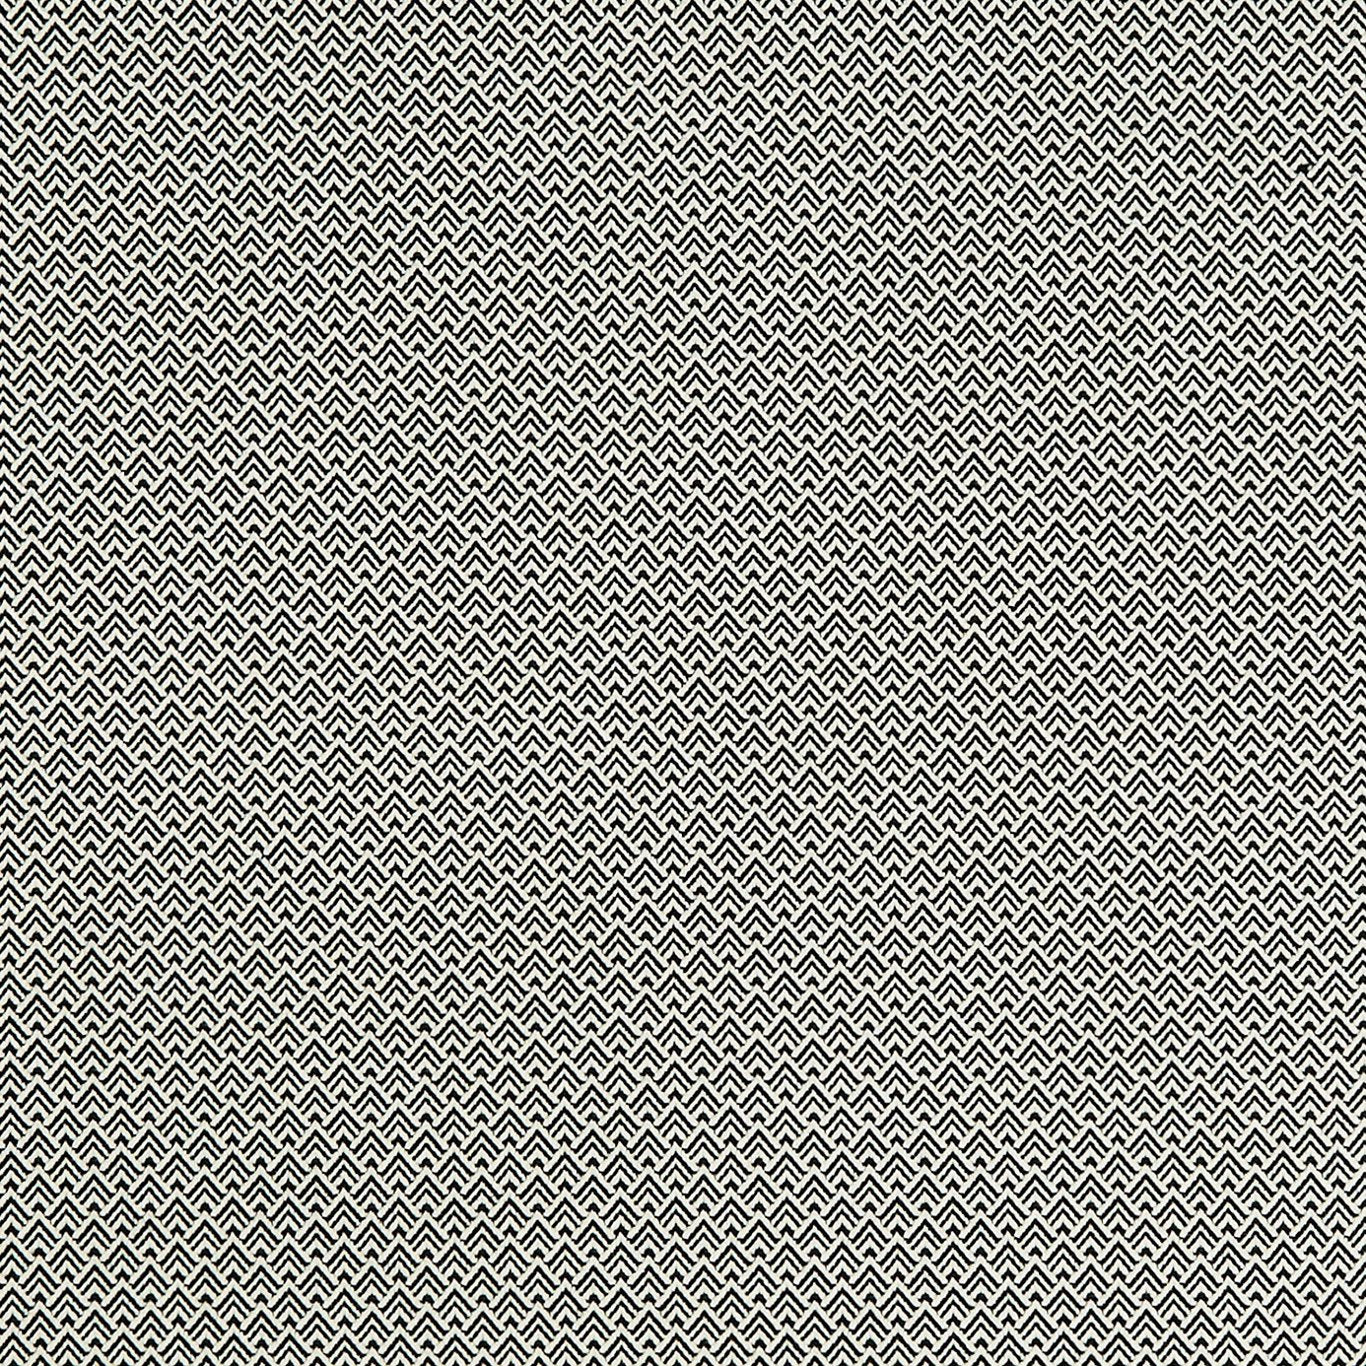 Bw1032 Fabric by Clarke & Clarke - F0905/01 - Black/White